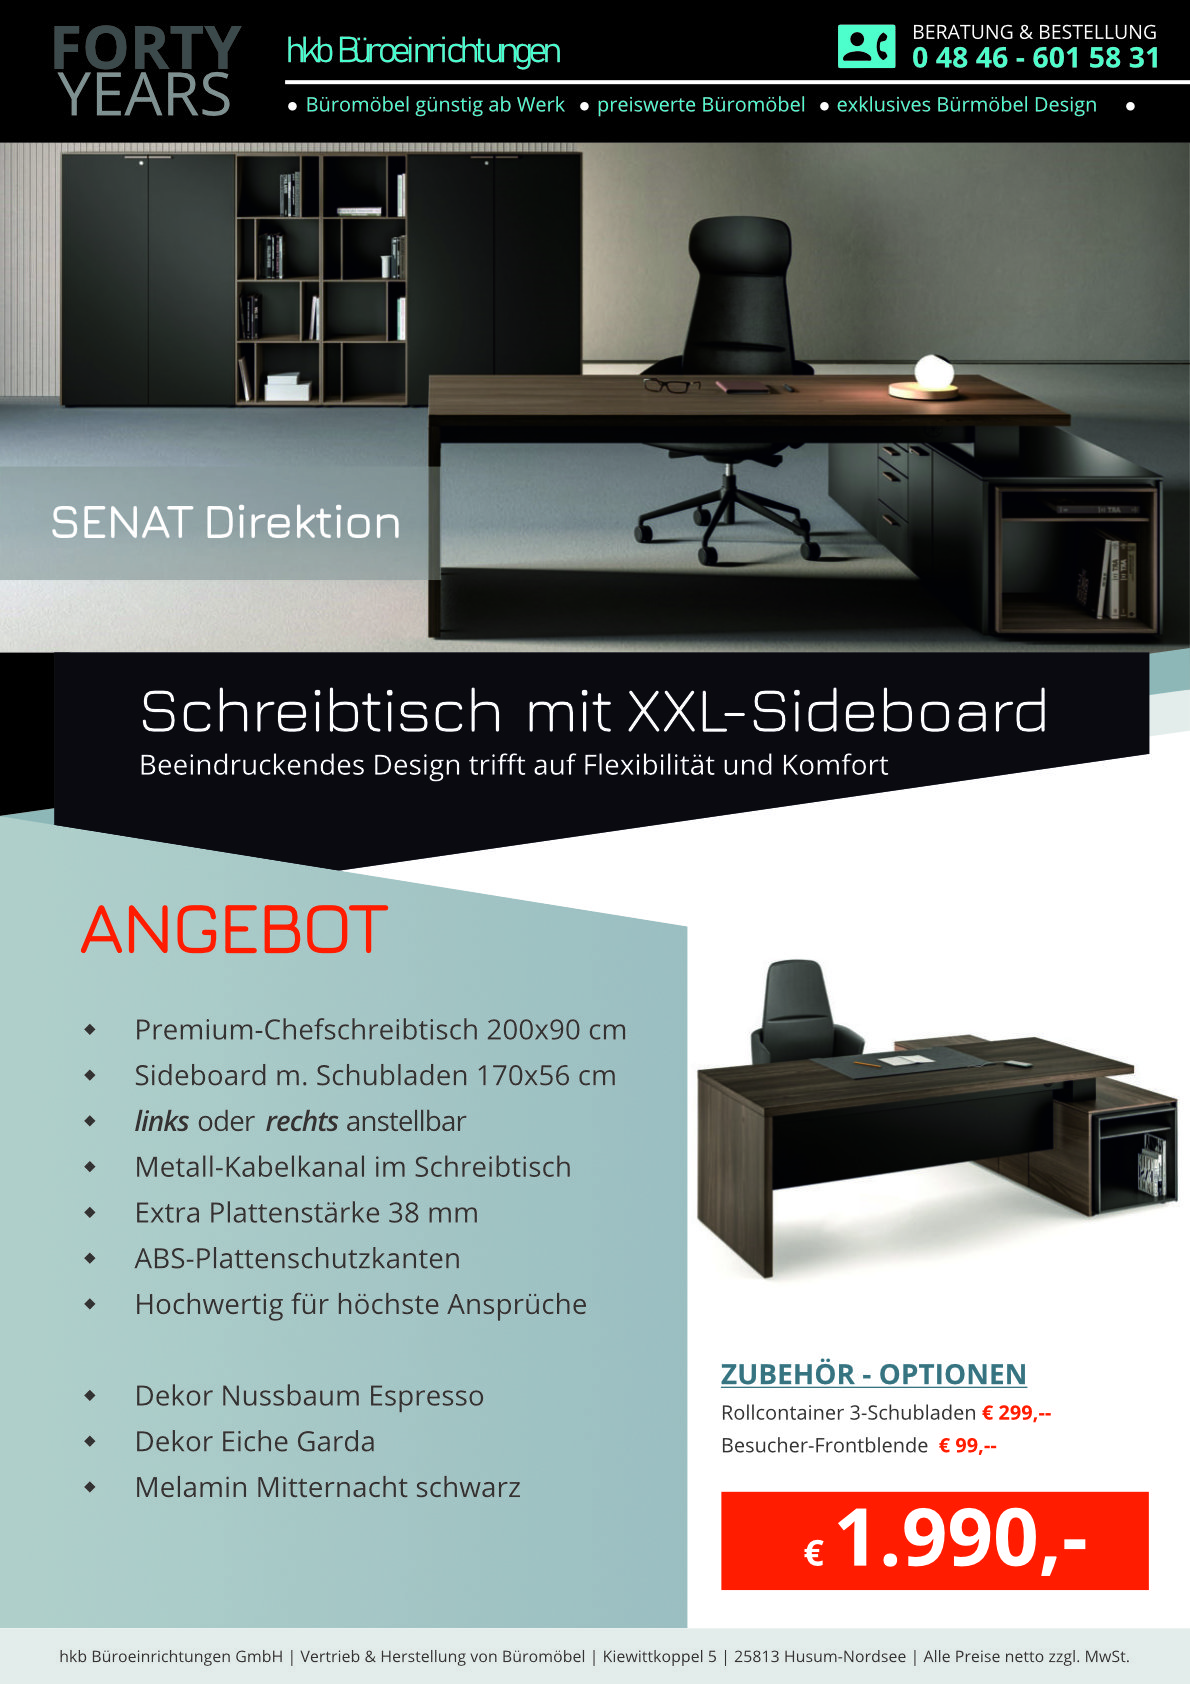 Angebot Chefschreibtisch mit Sideboard aus der Kollektion Büromöbel Senat von der Firma HKB Büroeinrichtungen GmbH Husum